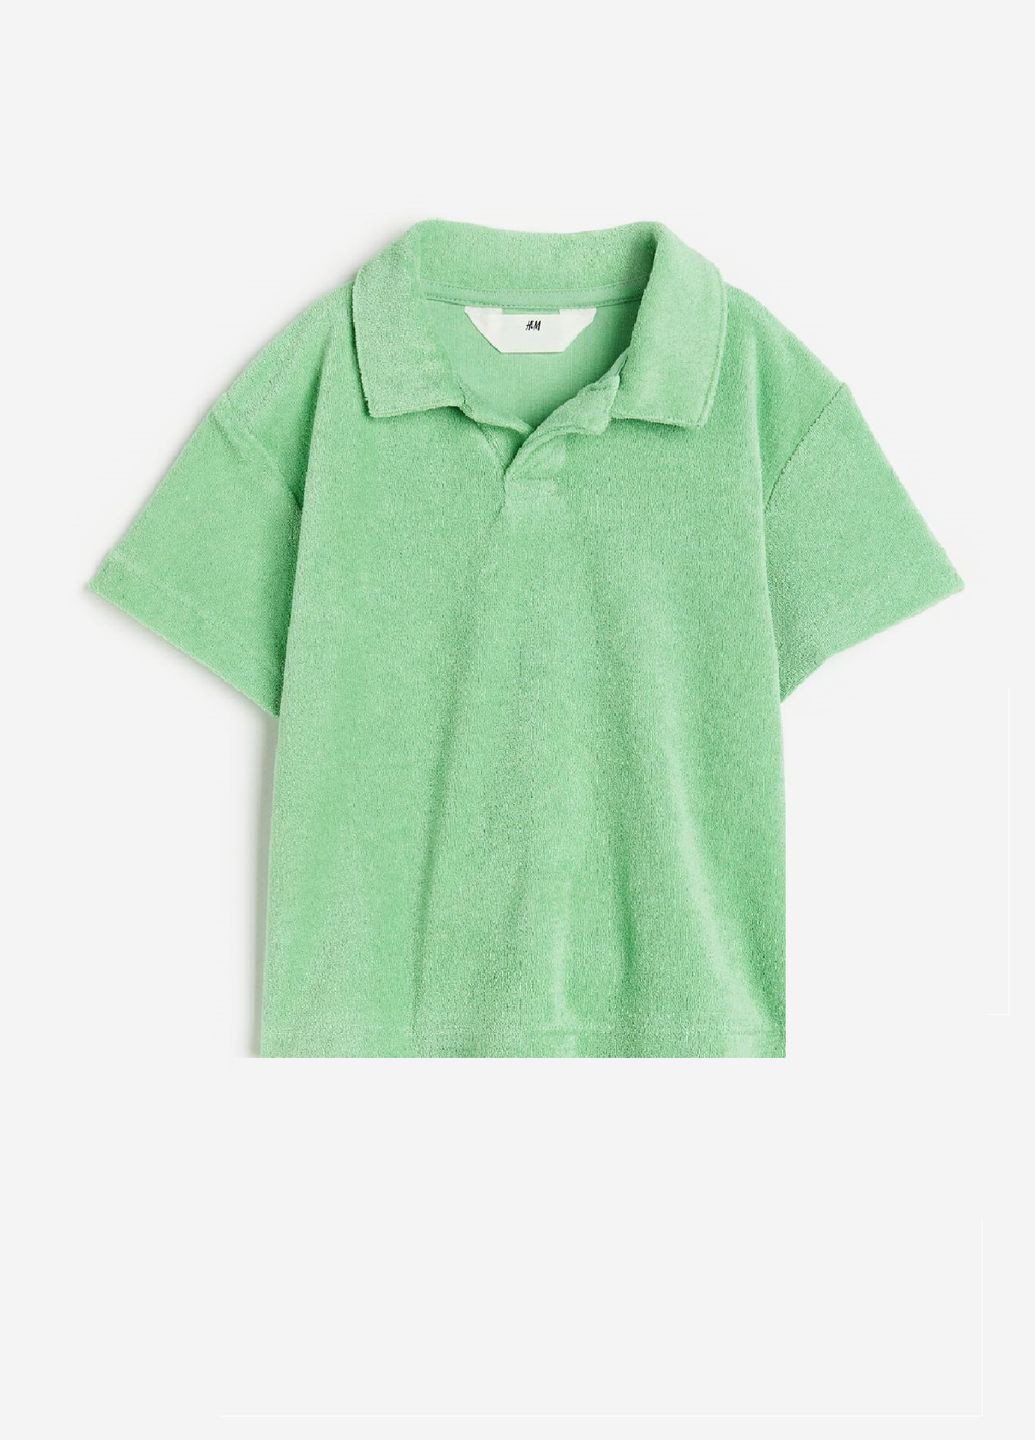 Салатовая детская футболка-поло для мальчика H&M однотонная